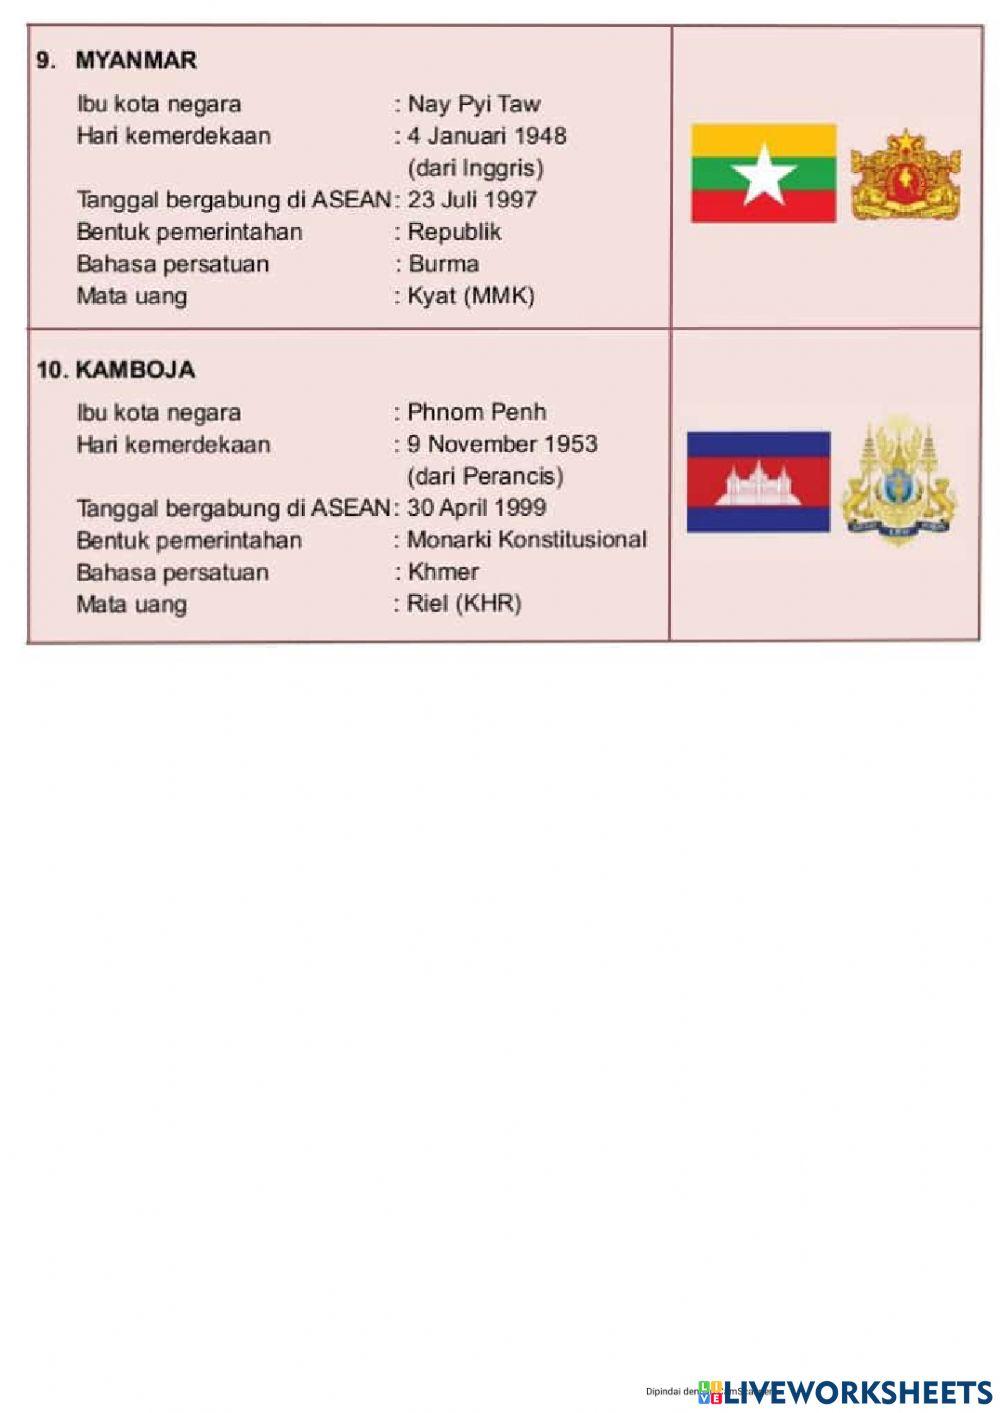 Materi ASEAN